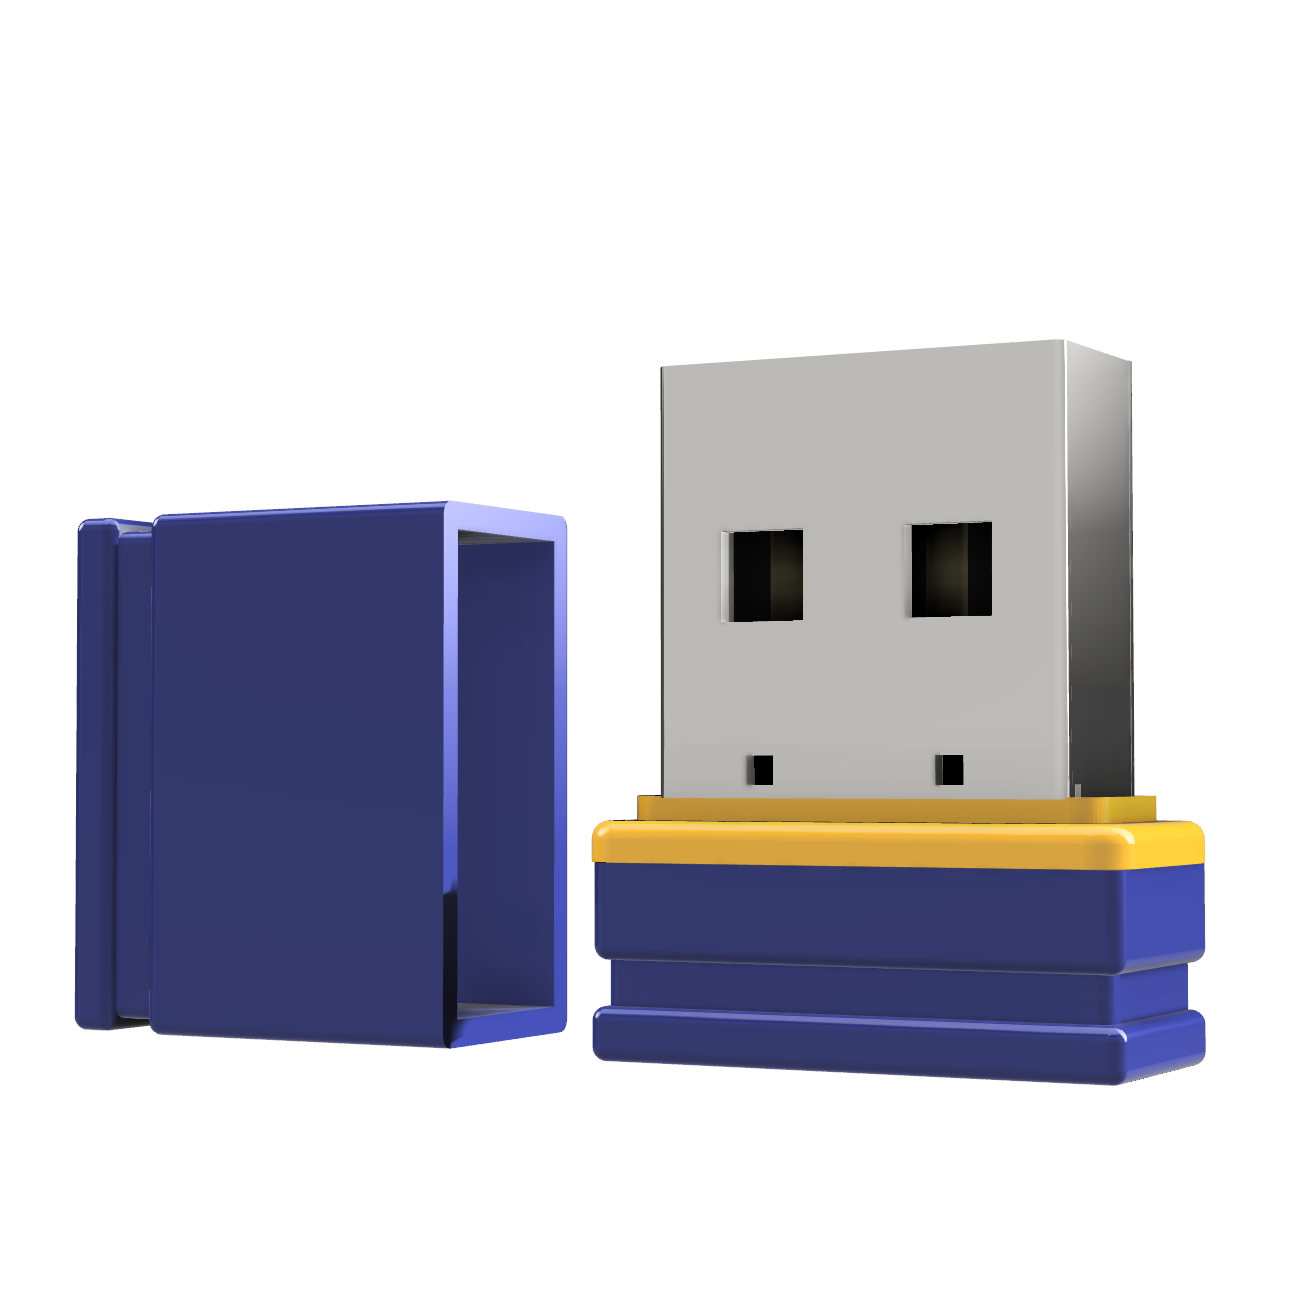 USB GERMANY (Blau/Gelb, P1 GB) USB-Stick Mini ®ULTRA 2